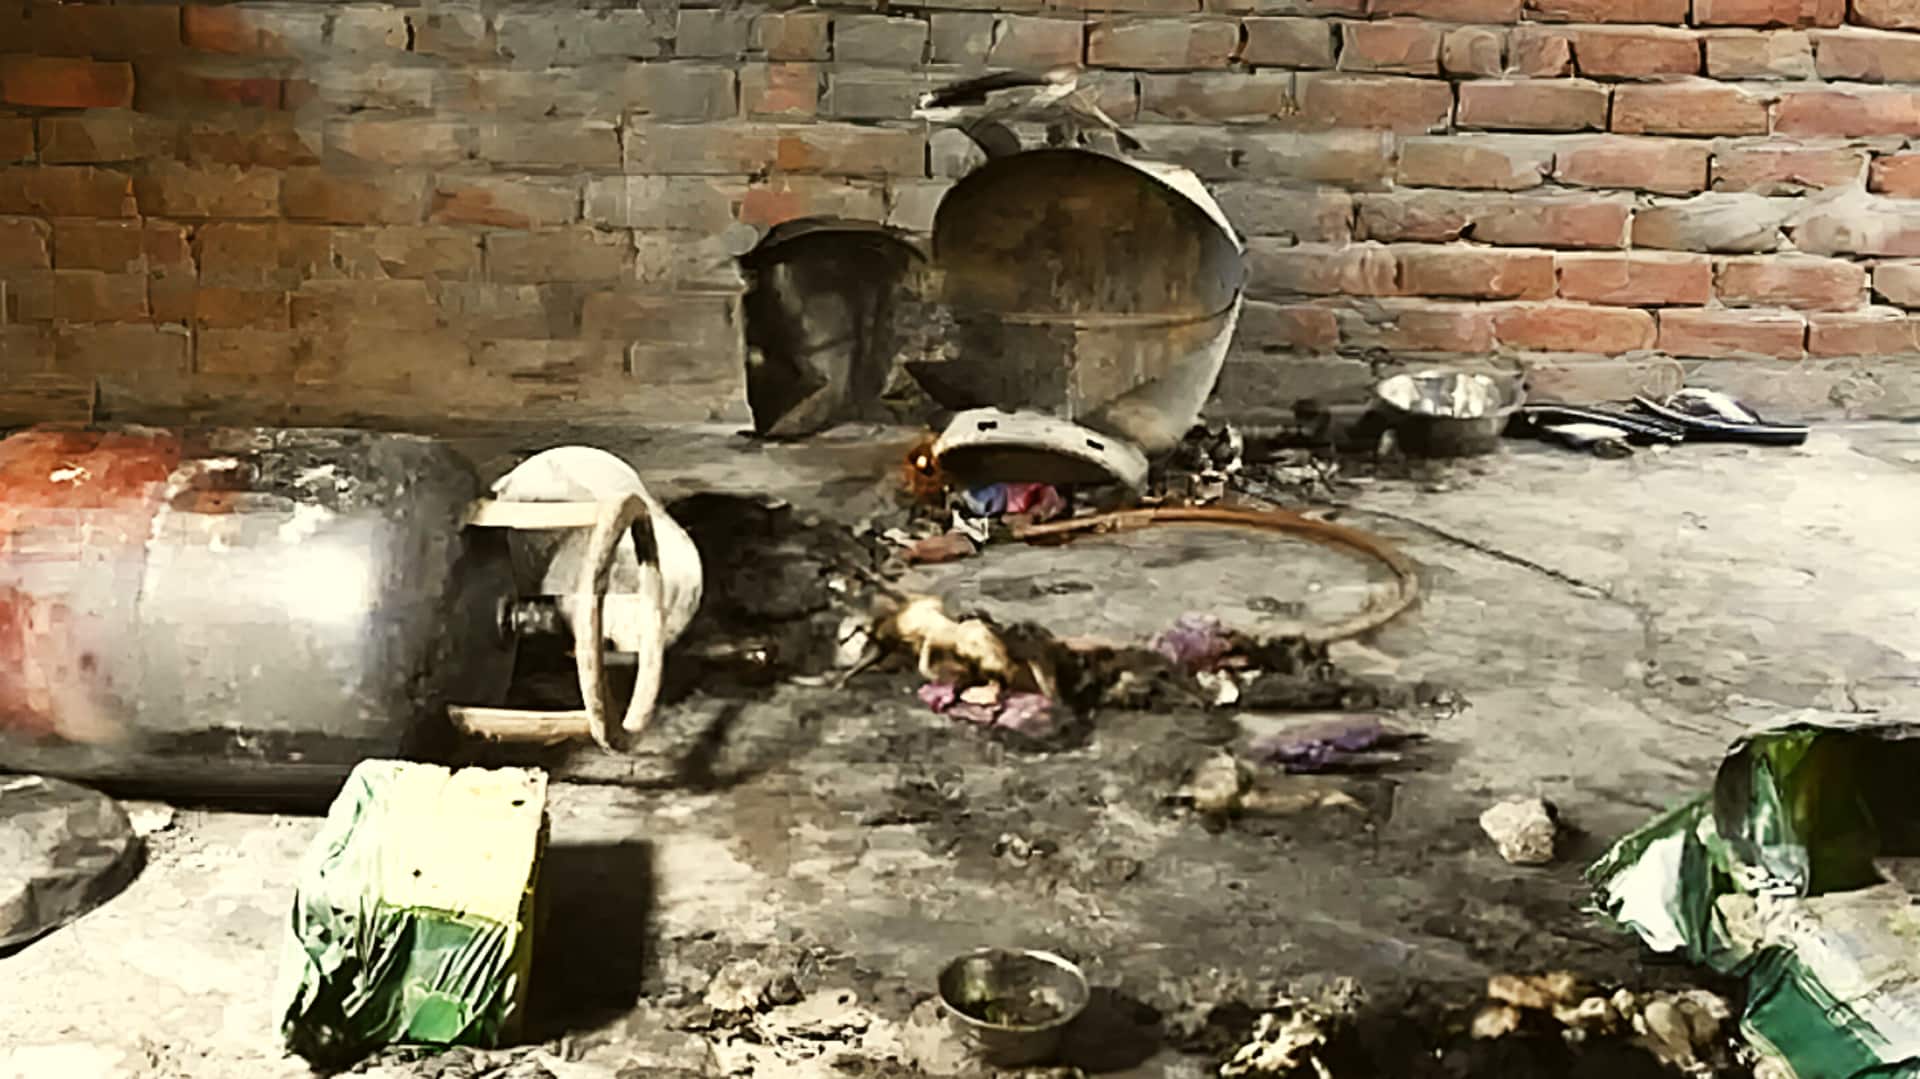 उत्तर प्रदेश: देवरिया में चाय बनाते समय सिलेंडर फटा, मां और 3 बच्चों की मौत